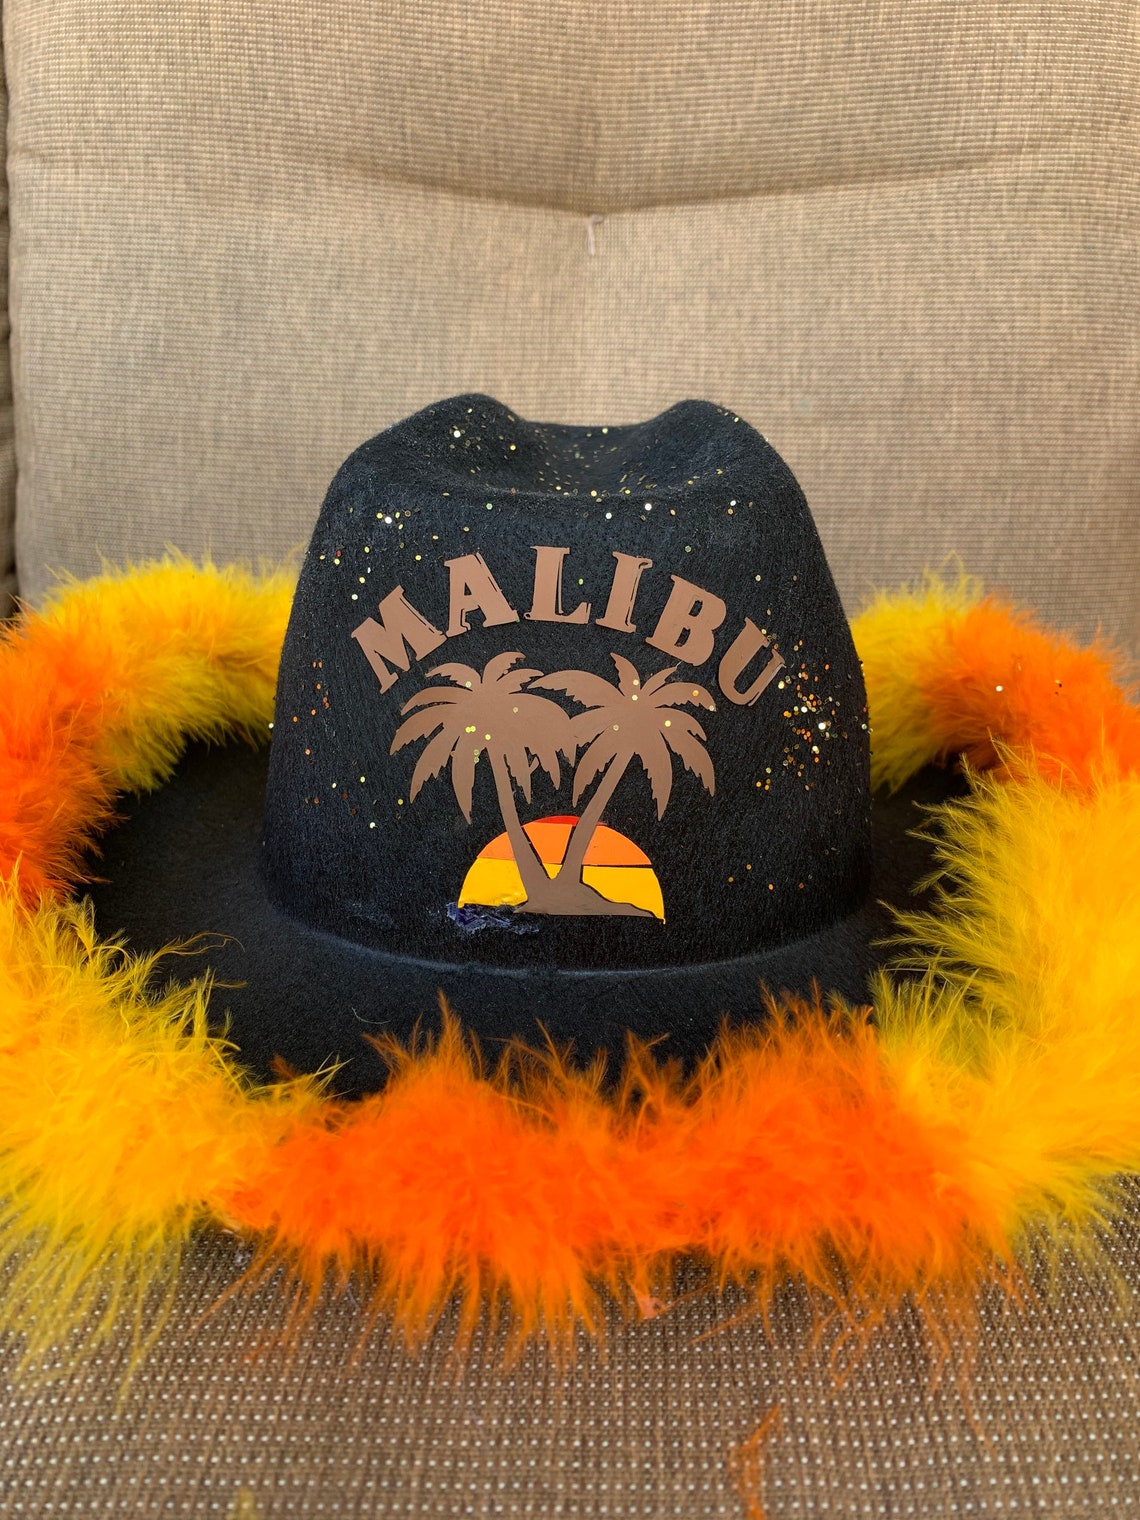 Malibu cowboy drinking hat cowboy hat drinking hat fun hat | Etsy